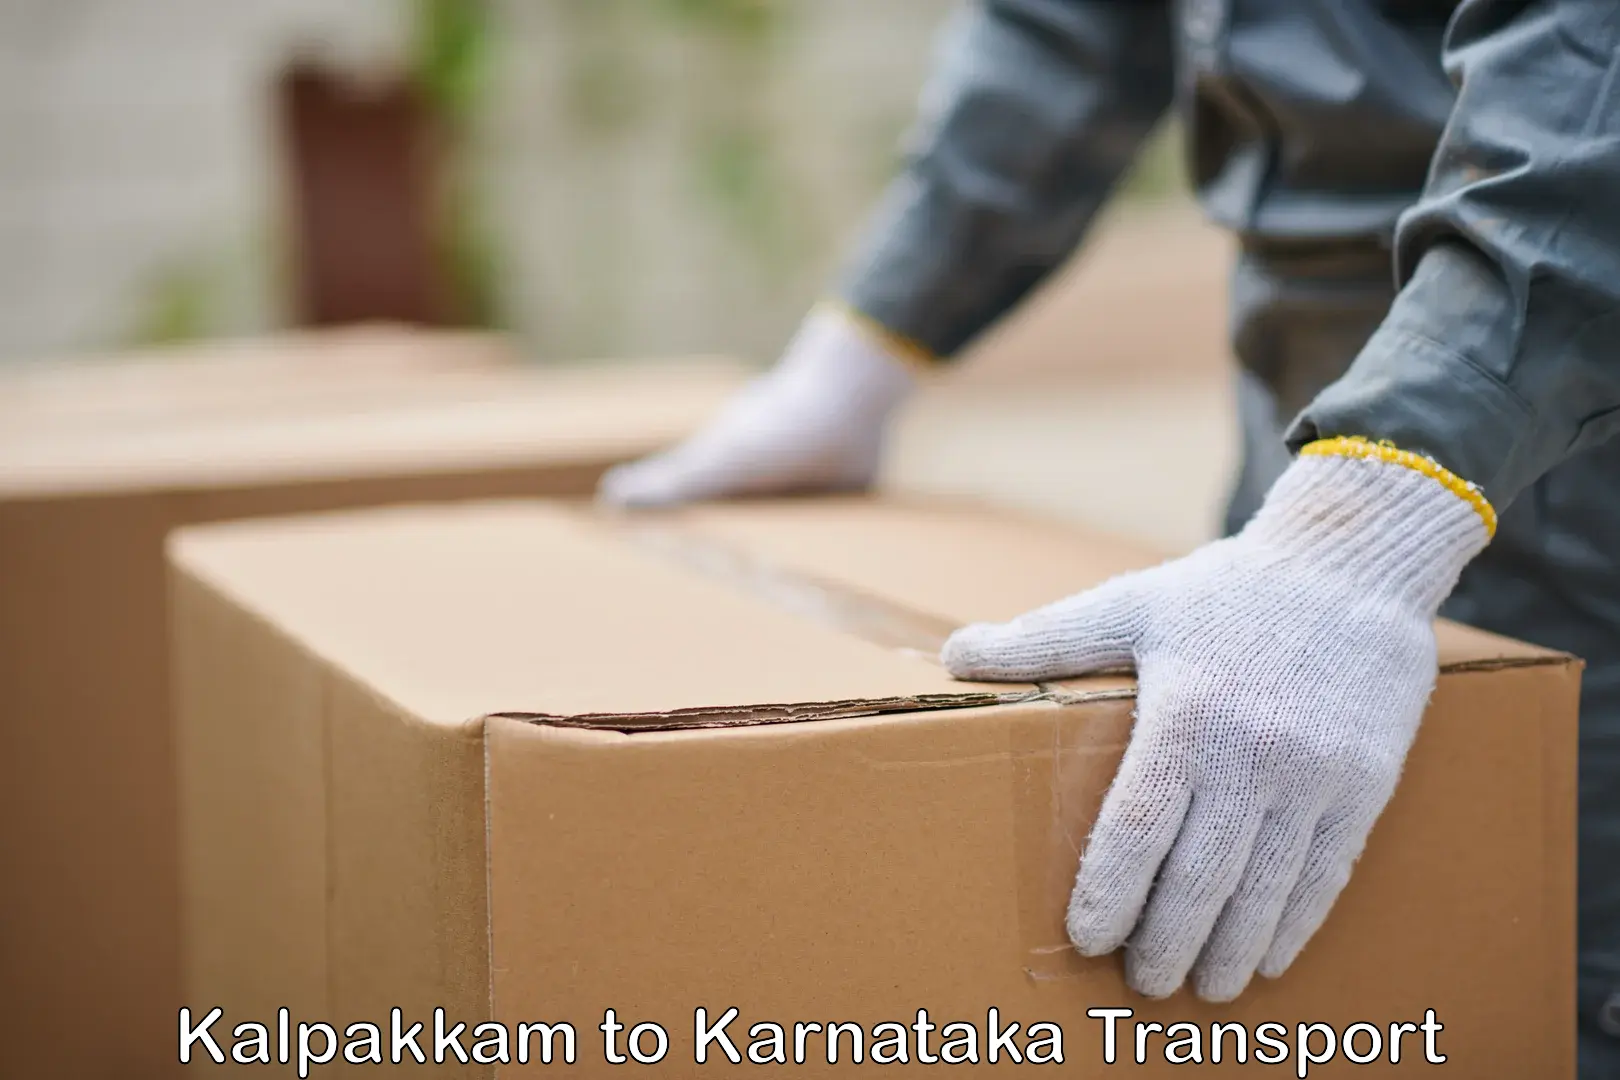 Parcel transport services Kalpakkam to Kollegal